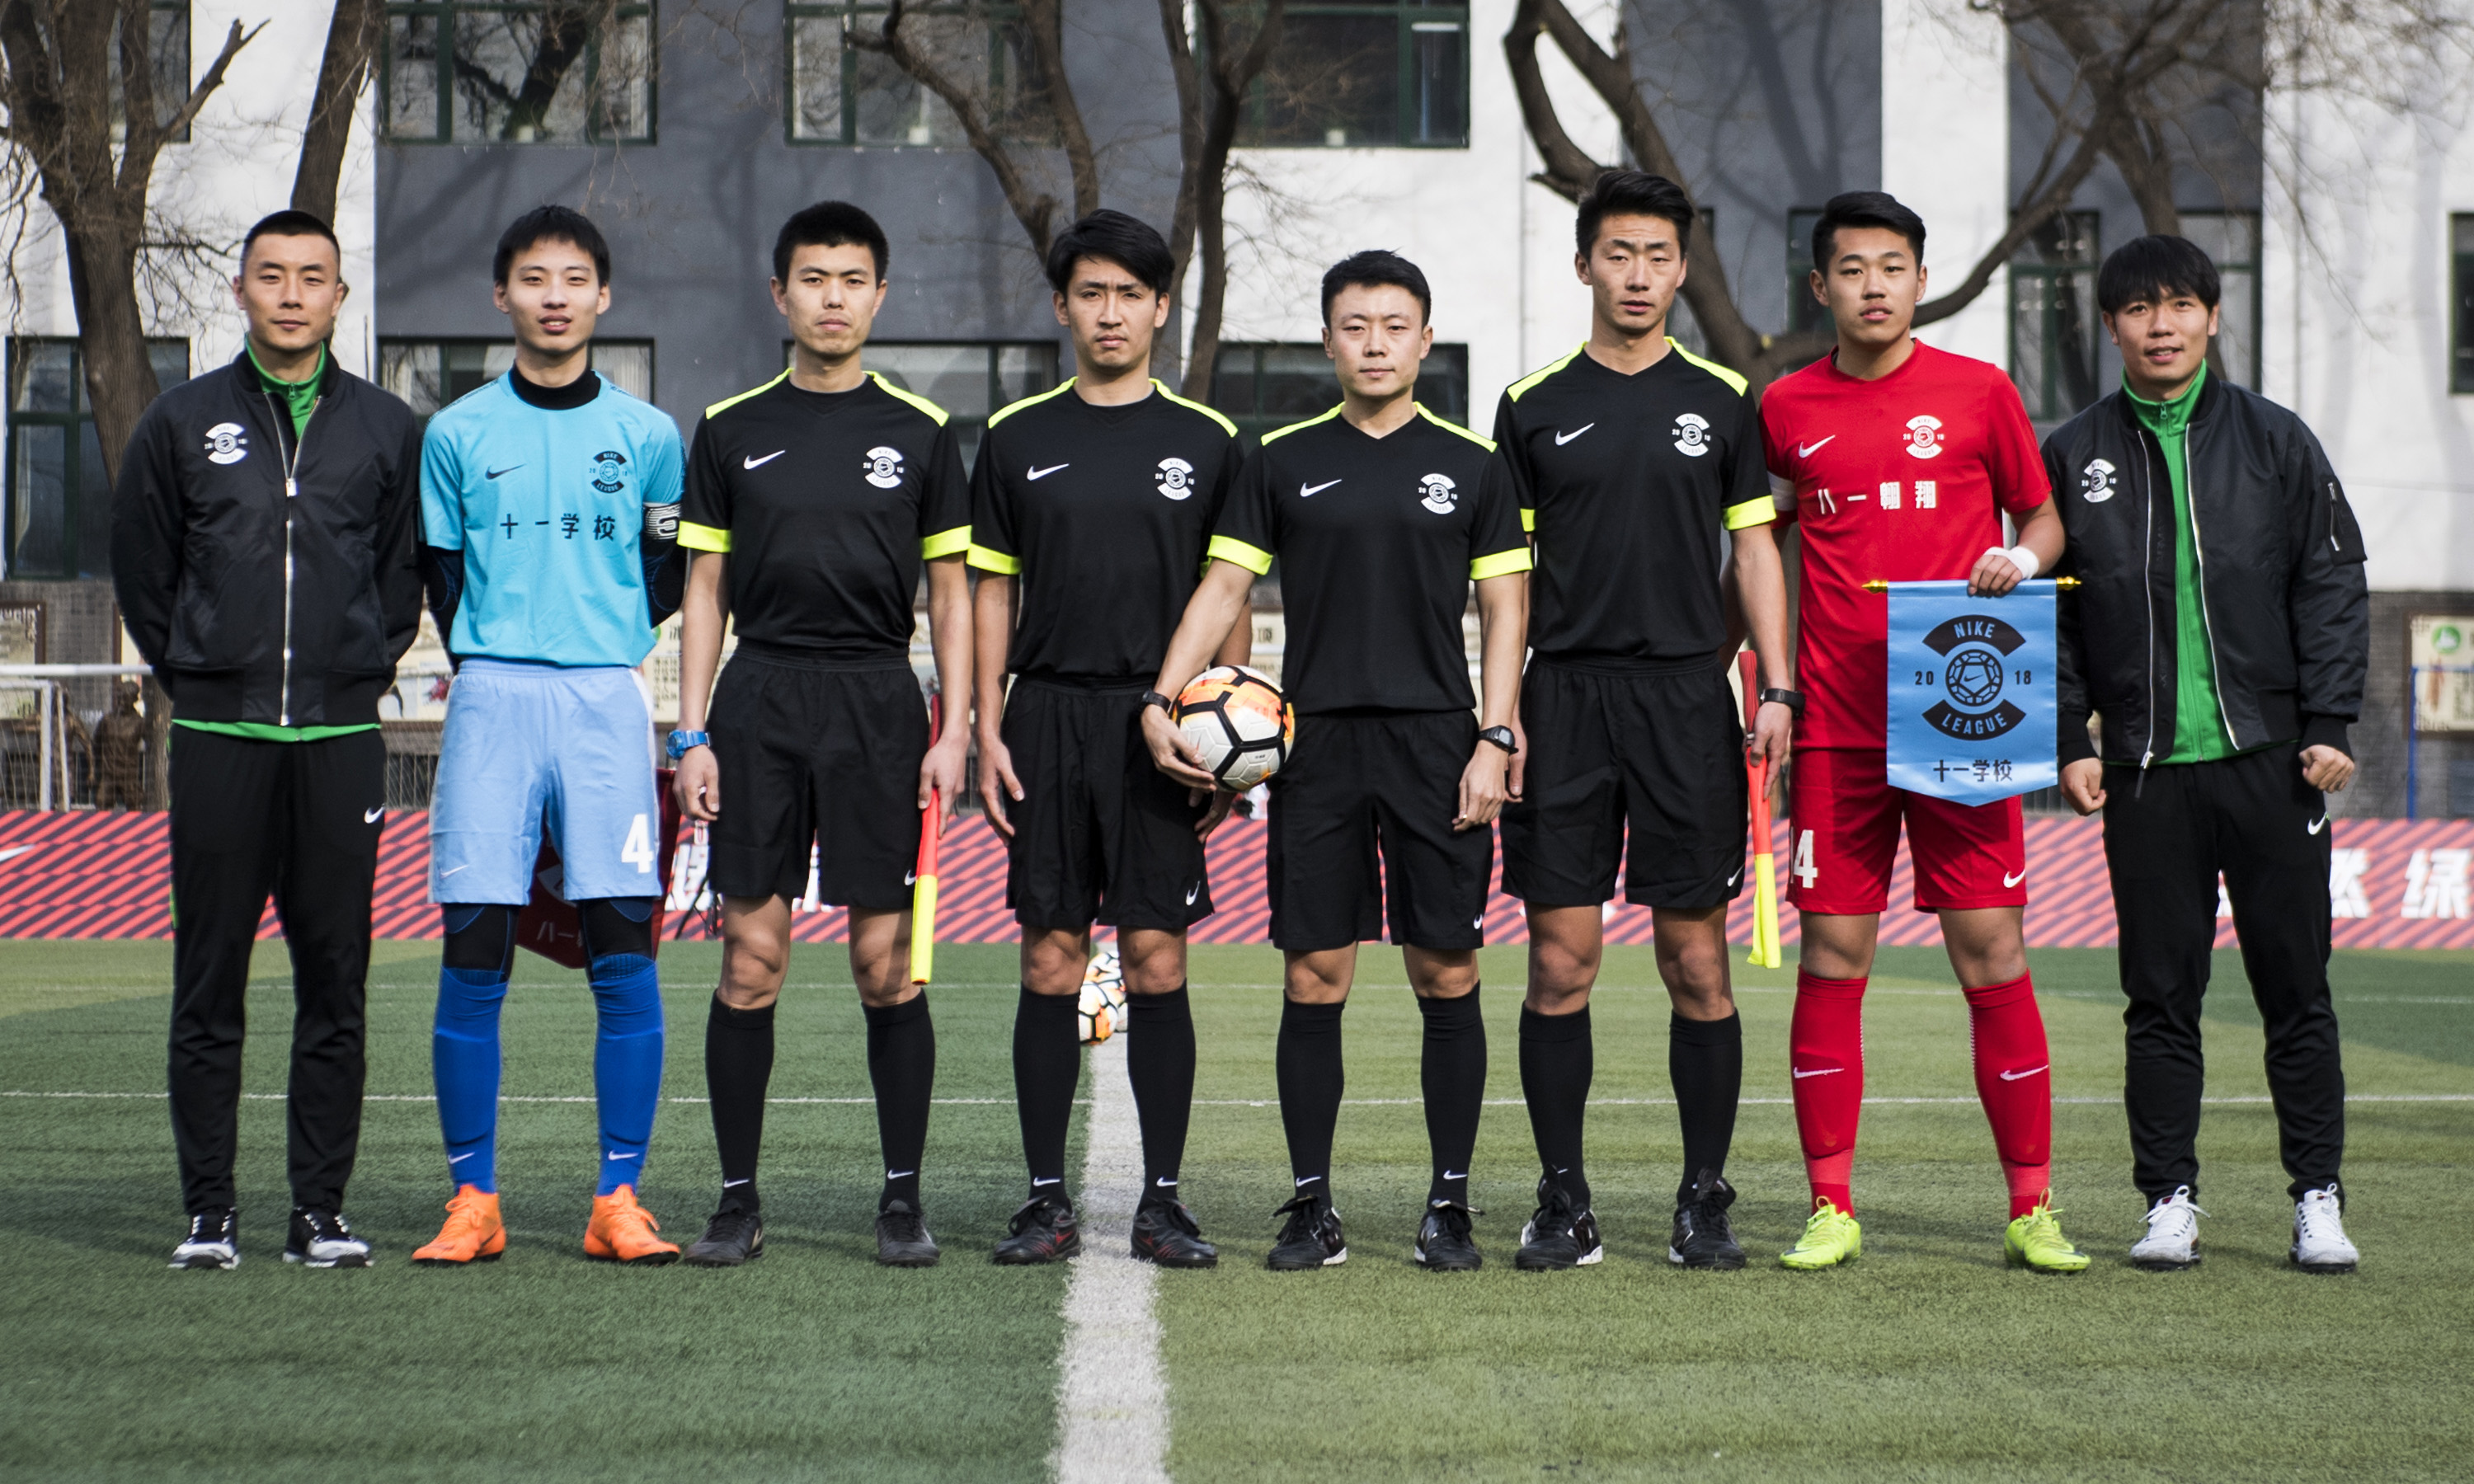 点燃绿茵！2018 北京耐克校园足球联赛正式启动